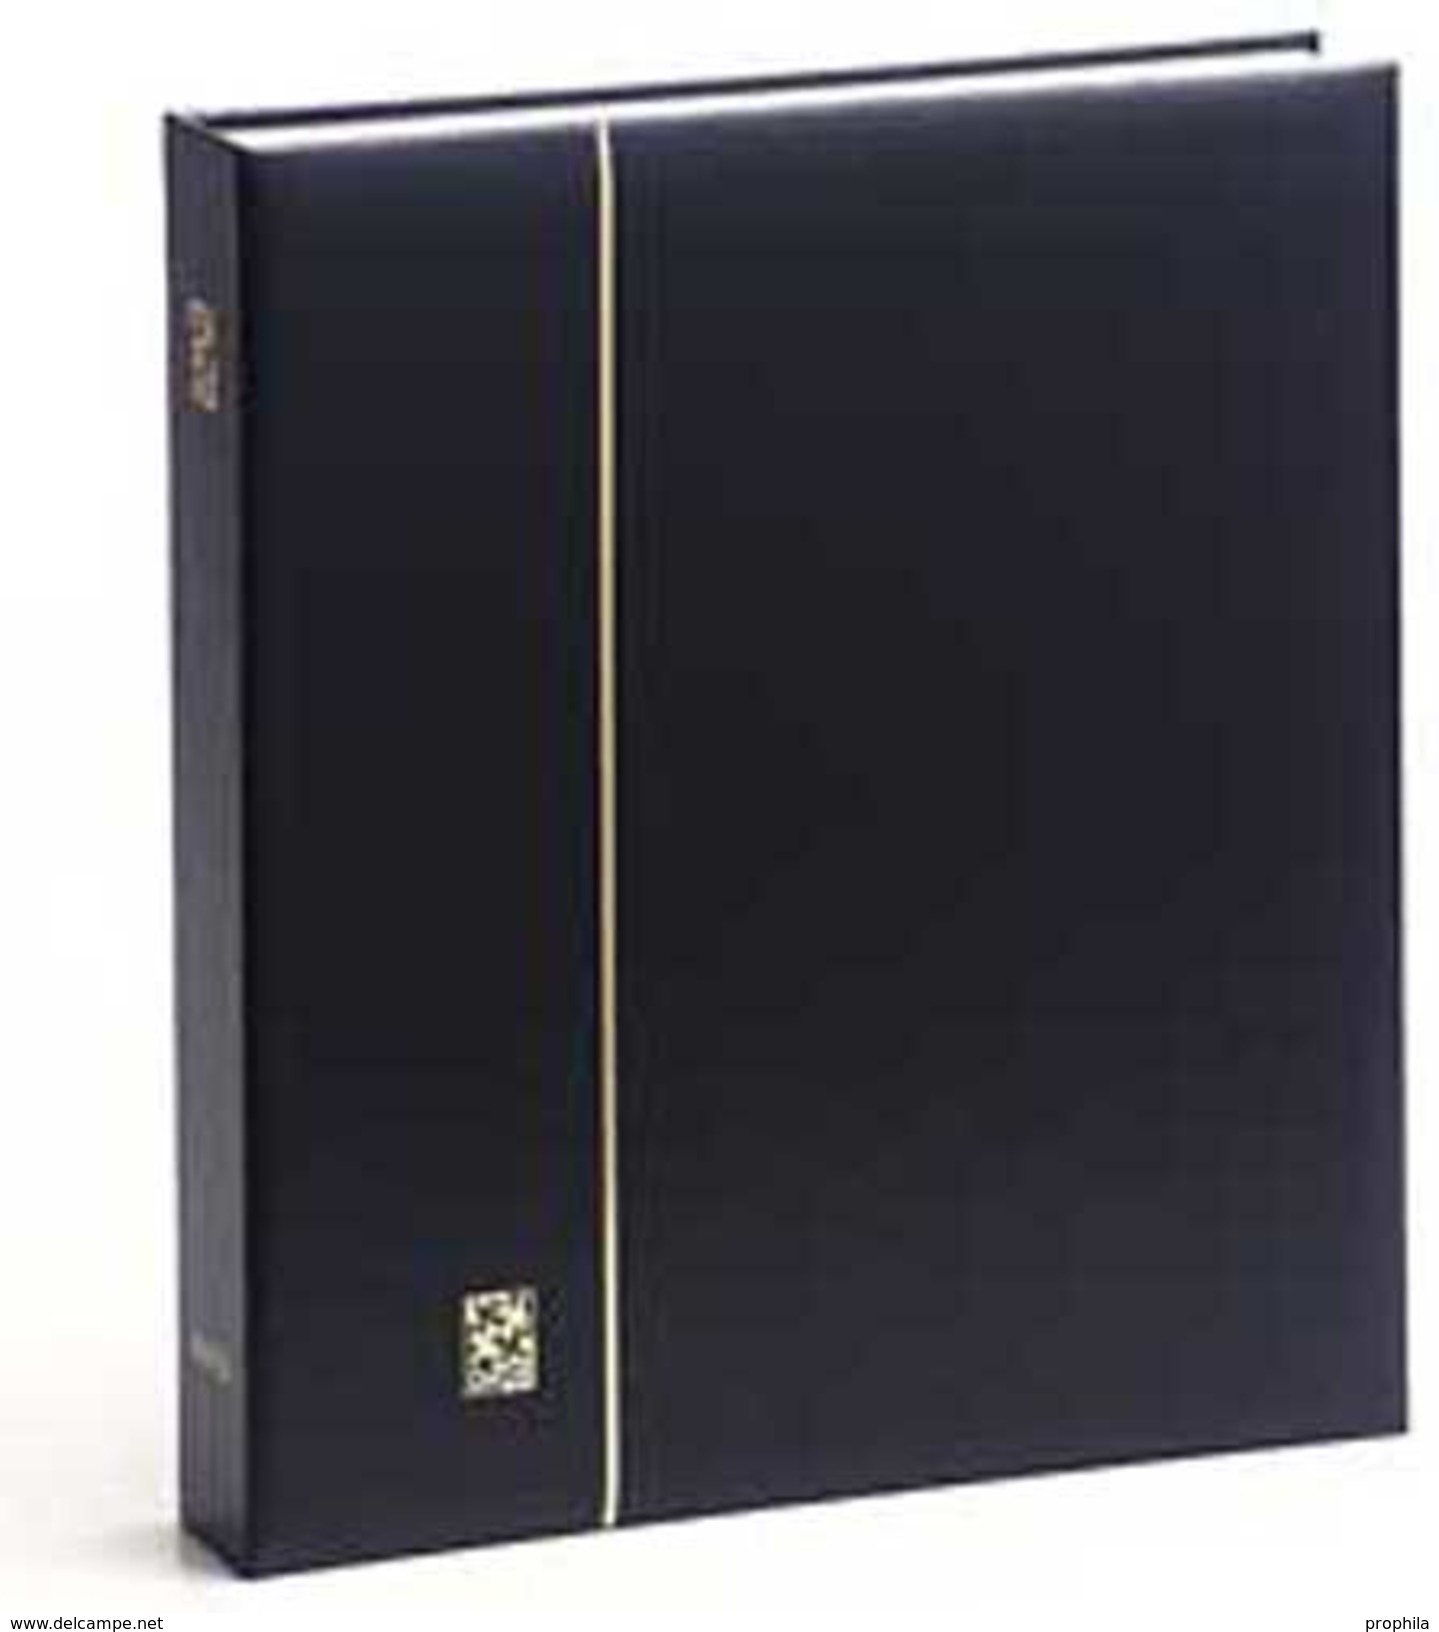 DAVO 10041 Luxus Binder Briefmarkenalbum 1250 (neutral) - Large Format, Black Pages